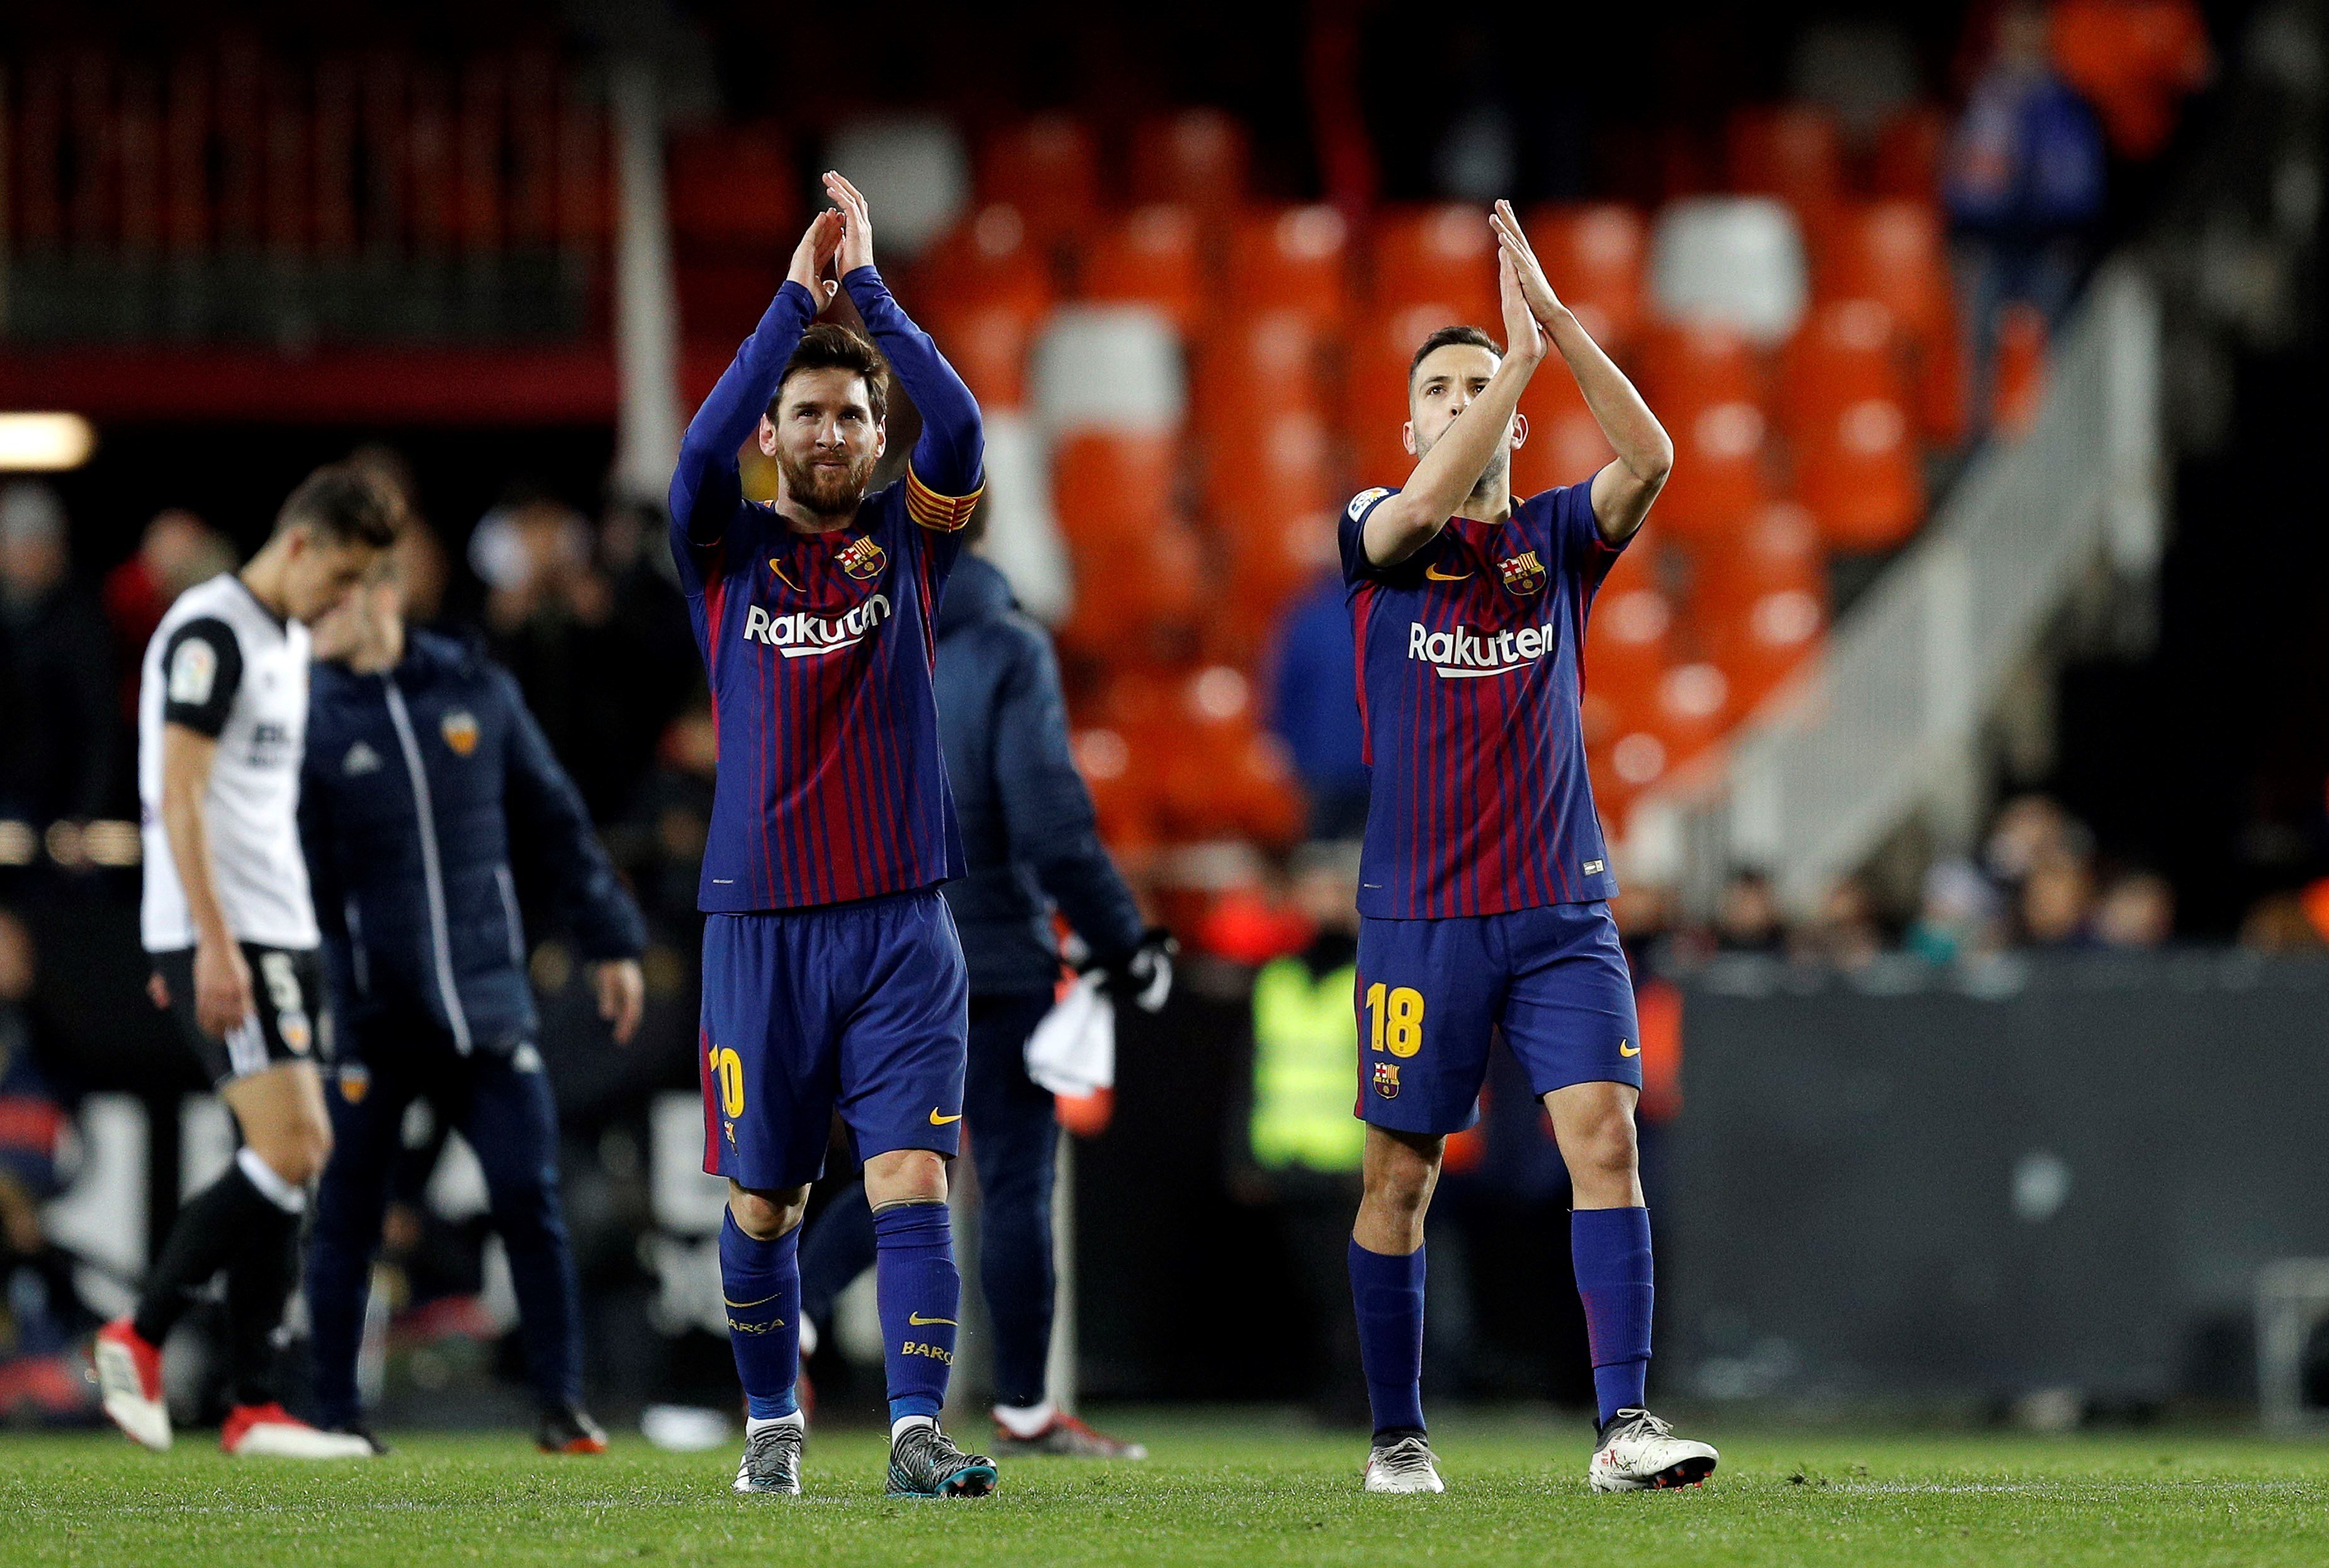 El Barça, a recuperar efectivos sin perder eficacia